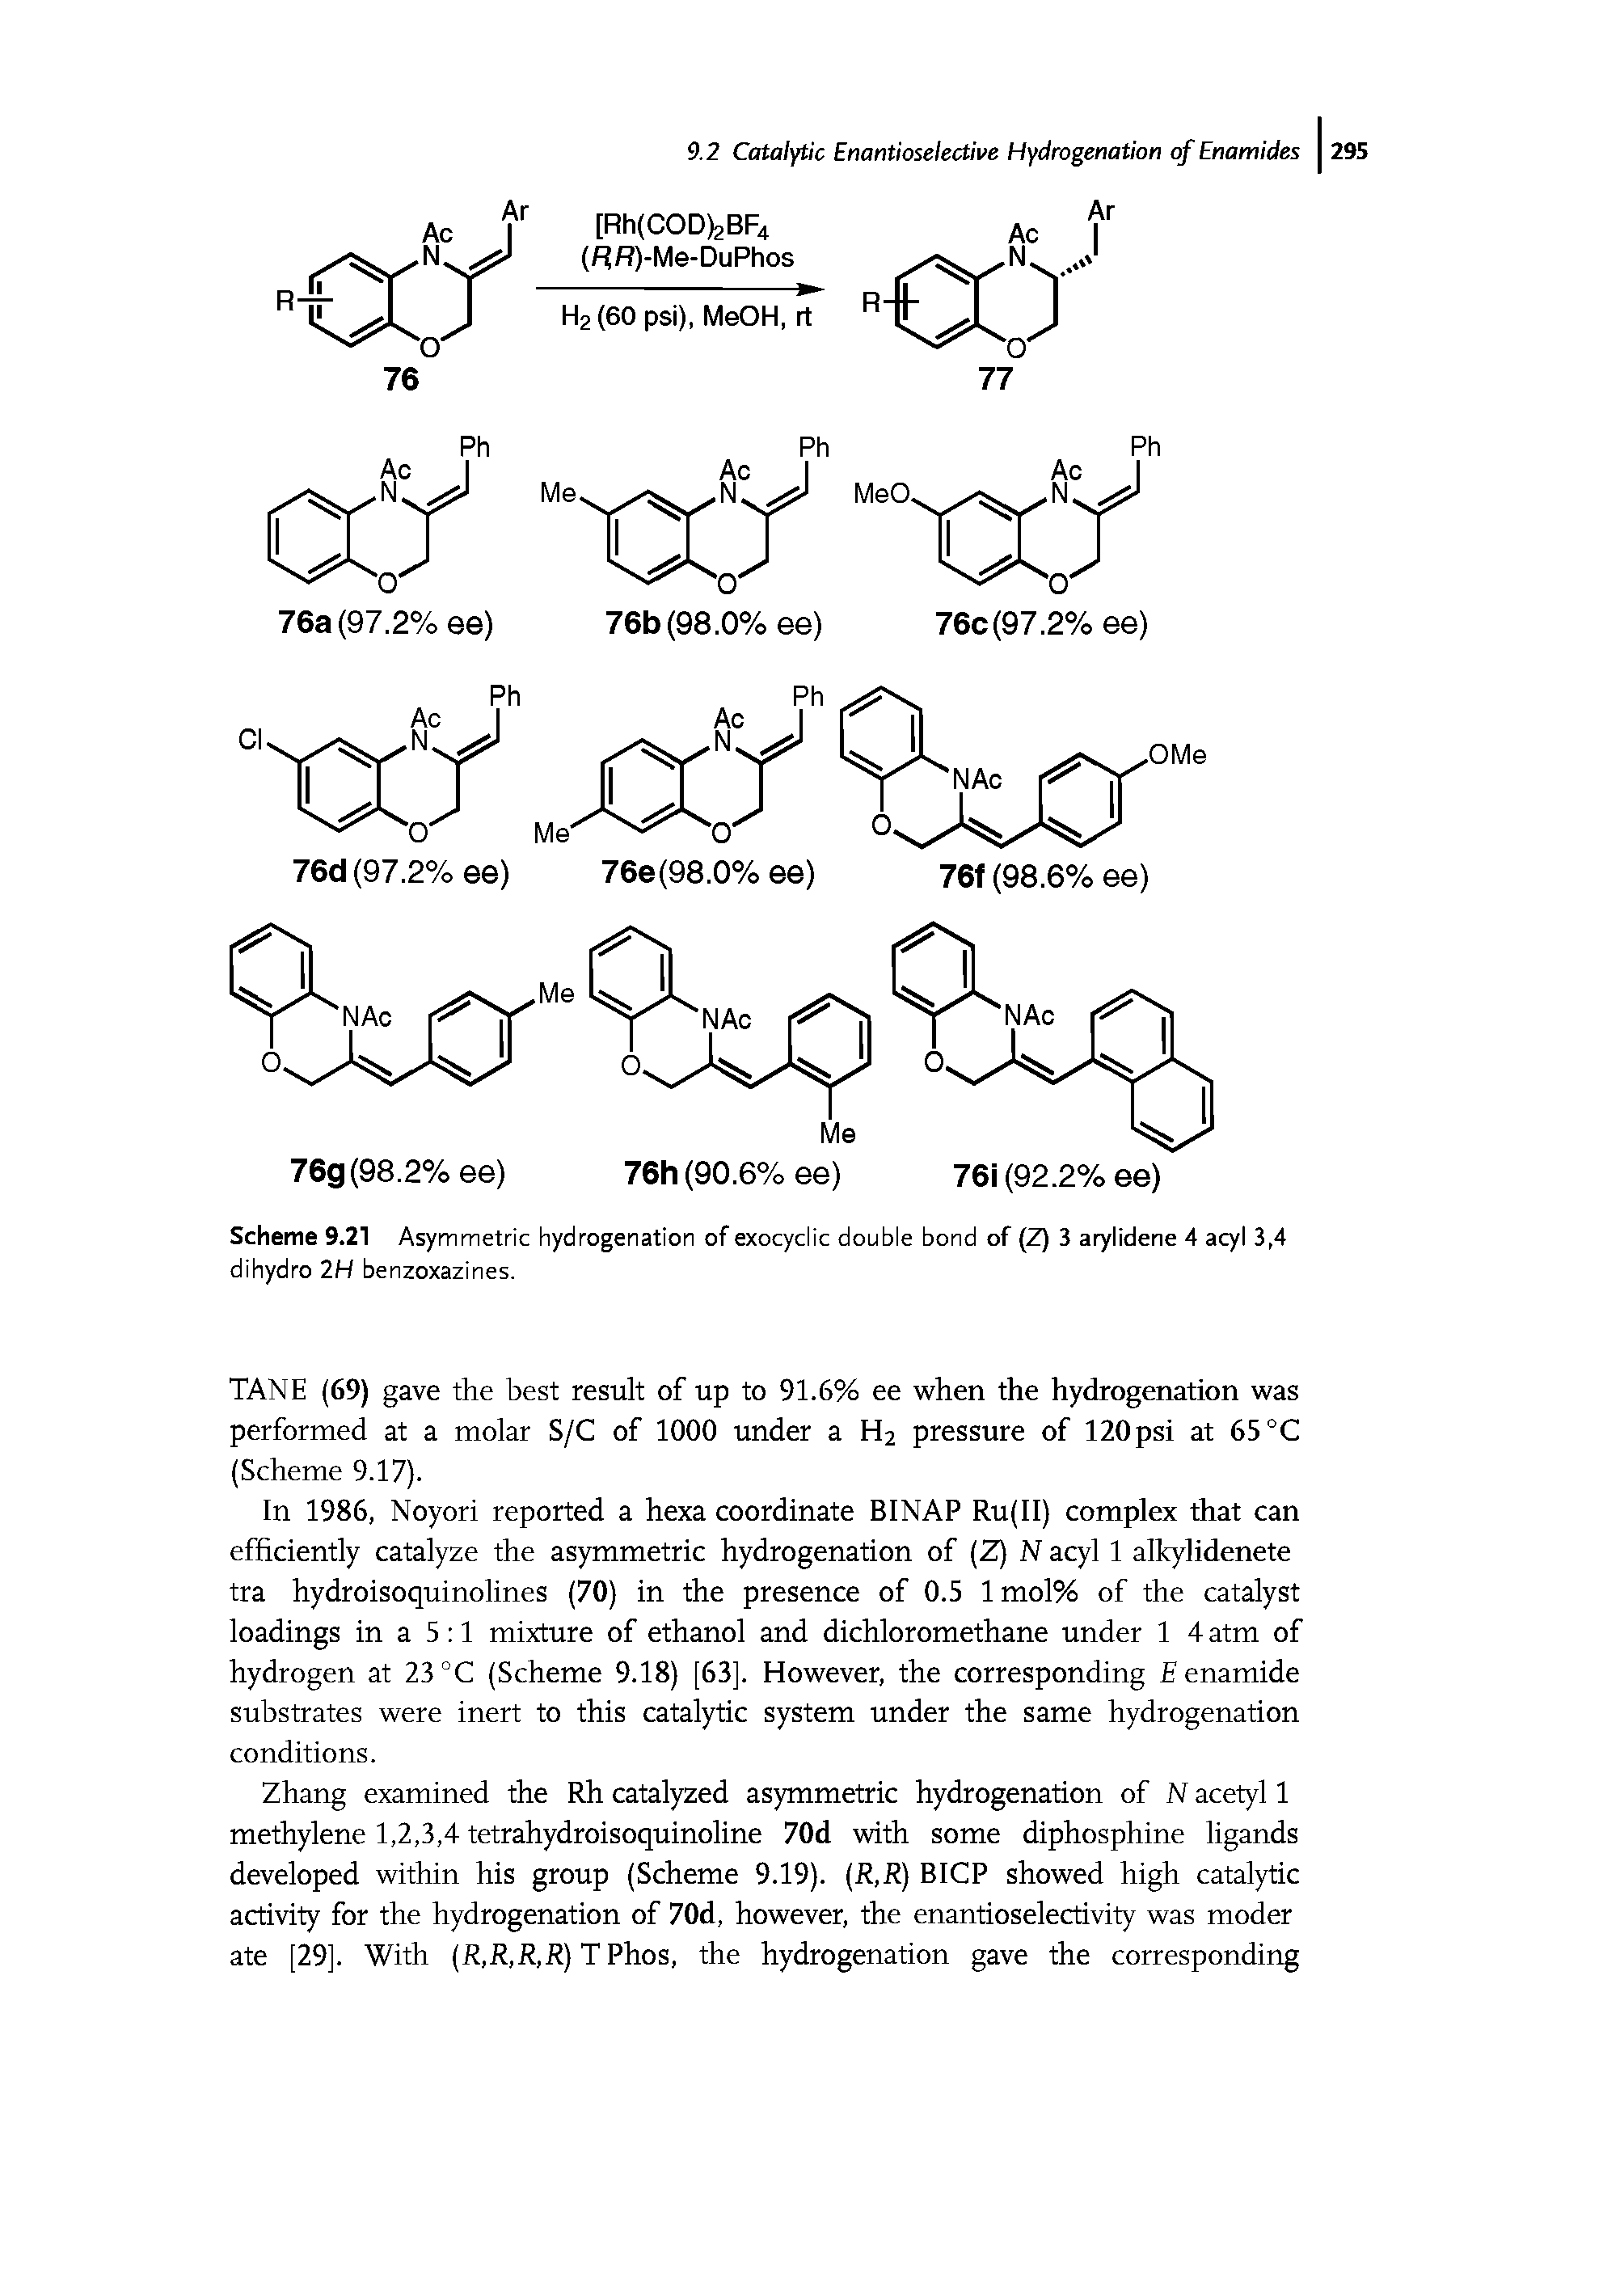 Scheme 9.21 Asymmetric hydrogenation of exocyclic double bond of (Z) 3 arylidene 4 acyl 3,4 dihydro 2H benzoxazines.